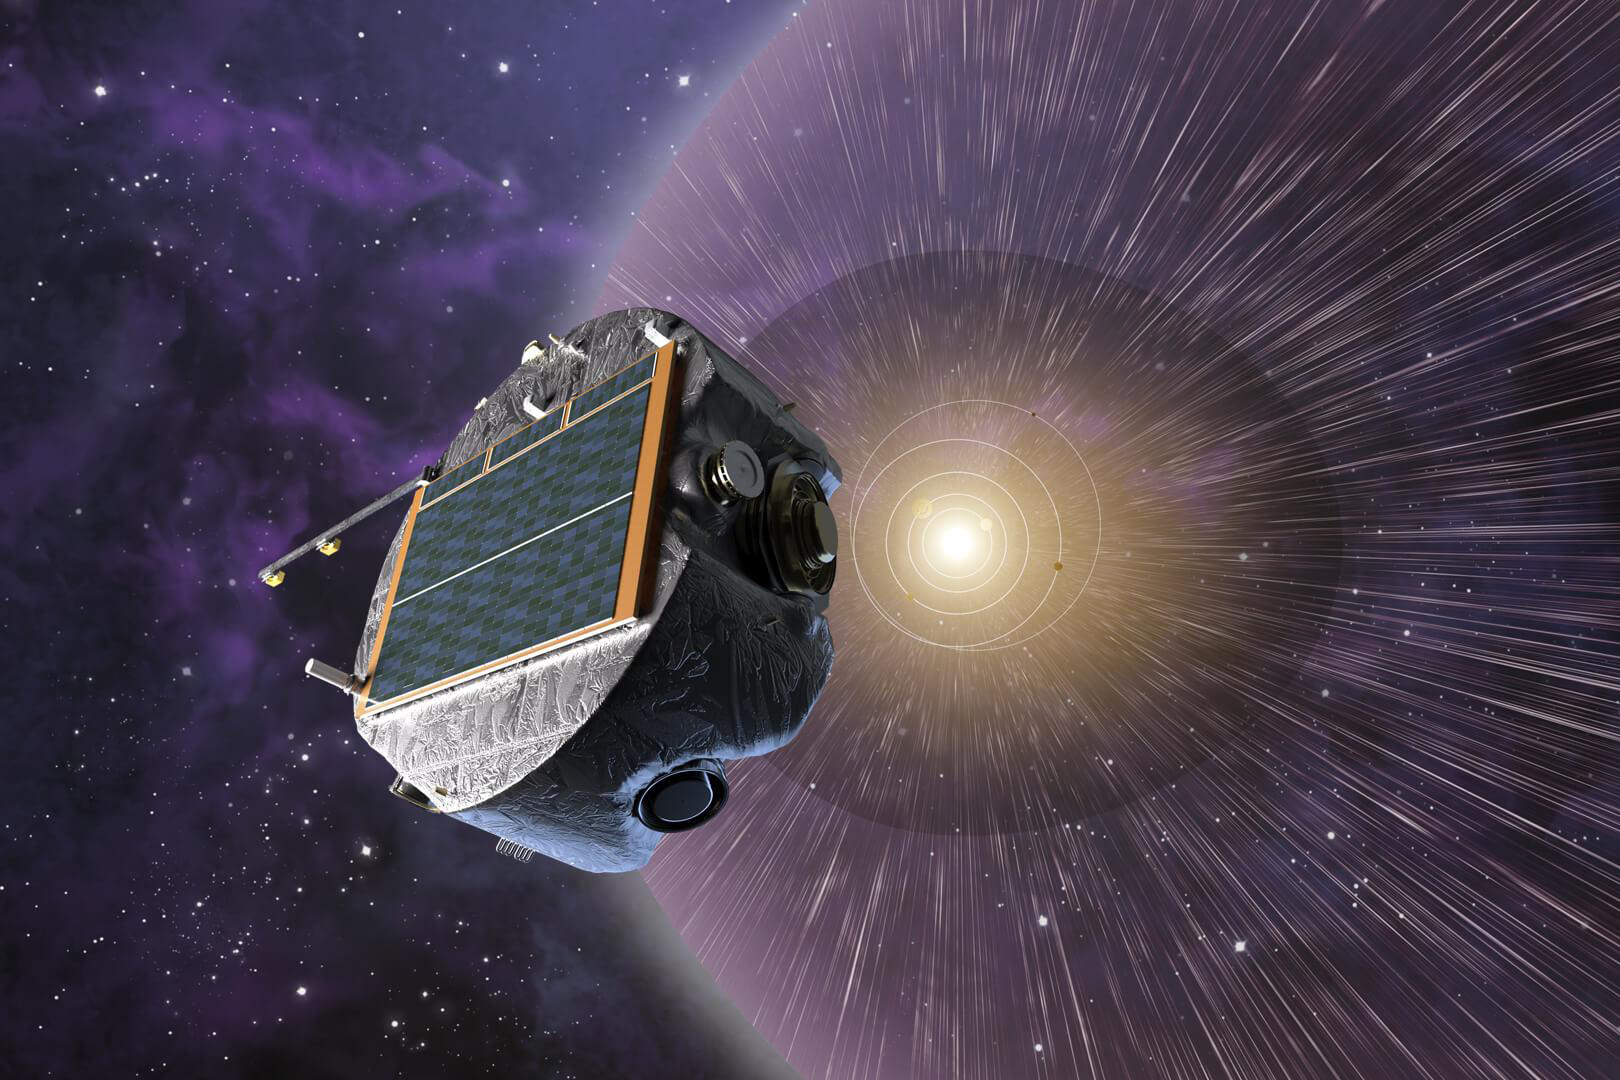 Artist's rendering of IMAP spacecraft